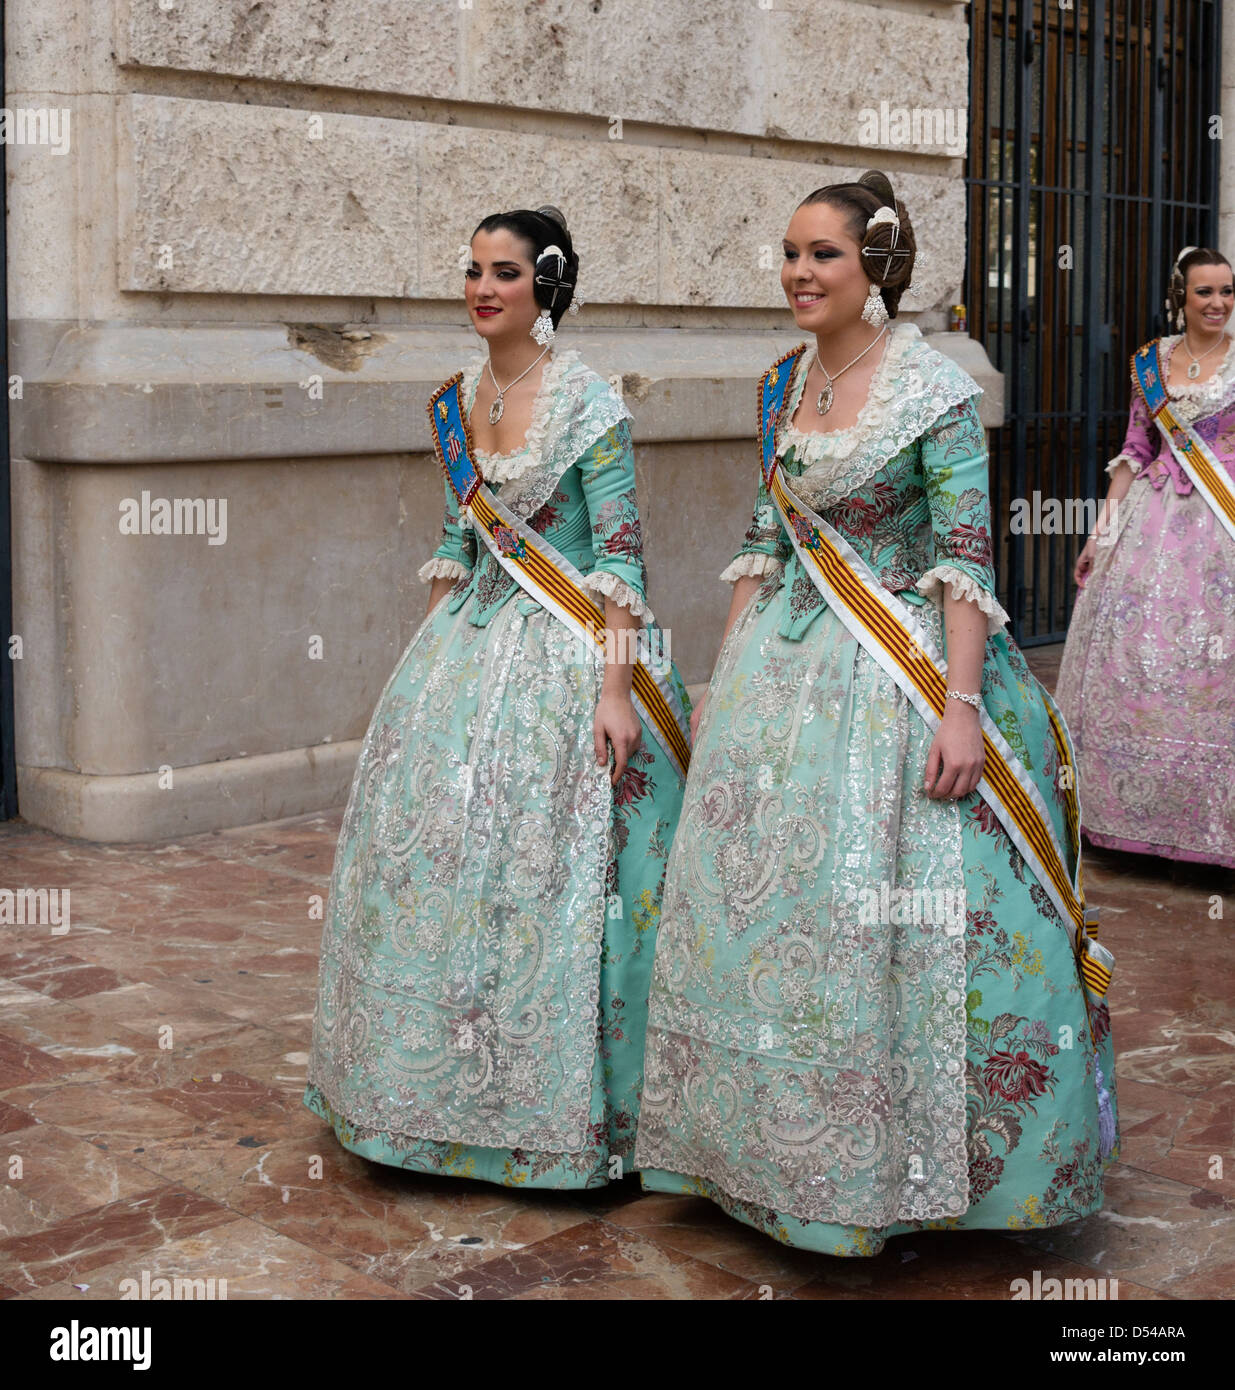 Spanish Girls in Fallera Costumes. Stock Photo